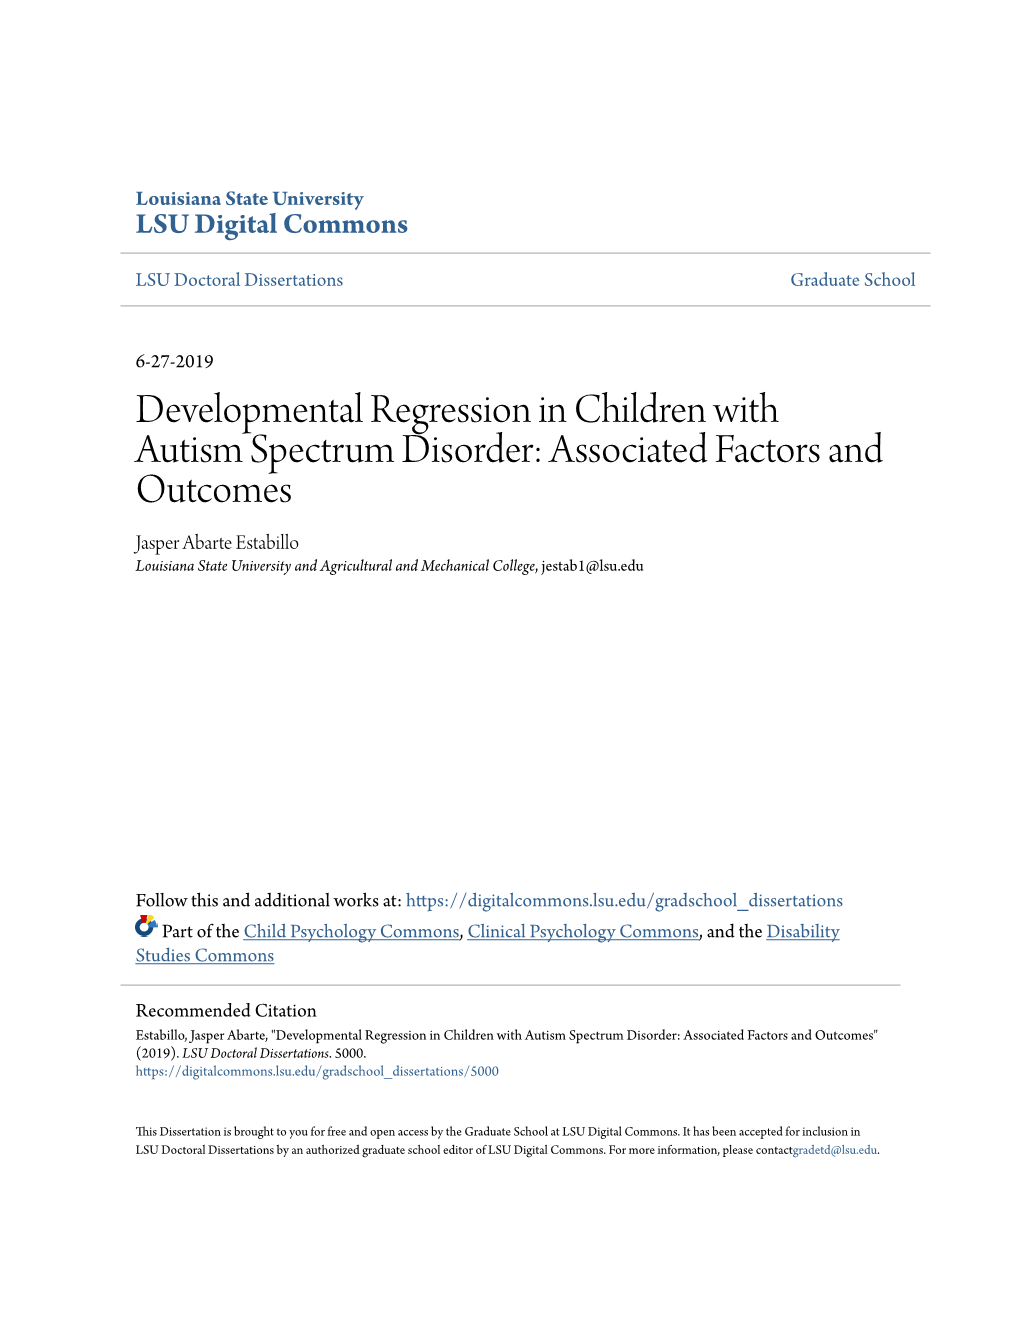 Developmental Regression in Children